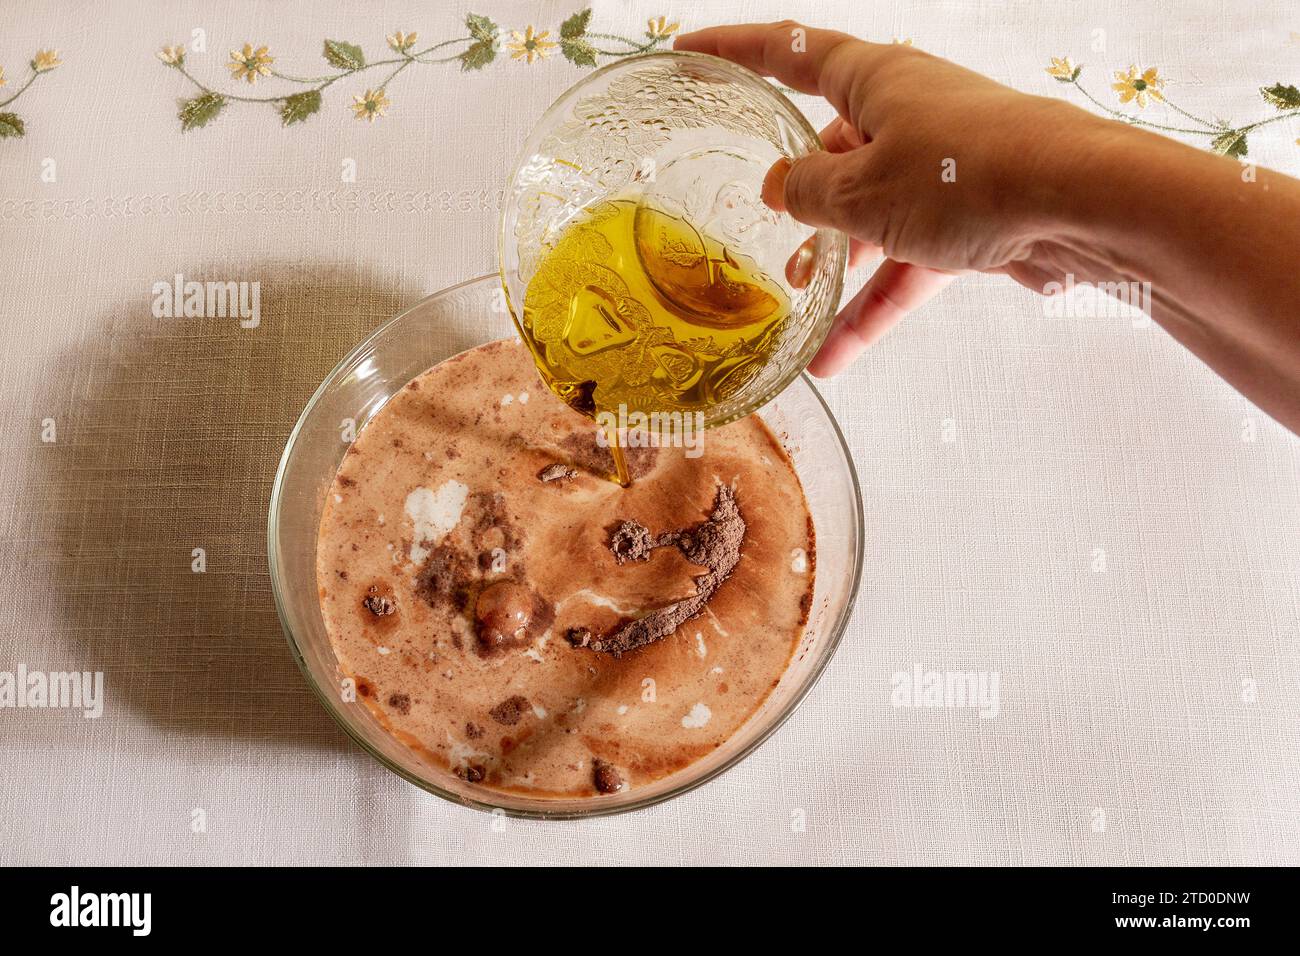 Vue de dessus de la personne anonyme de la récolte est montrée aspergeant d'huile d'olive sur un bol en verre clair rempli de lait et de chocolat en poudre, sur une table avec emboide Banque D'Images